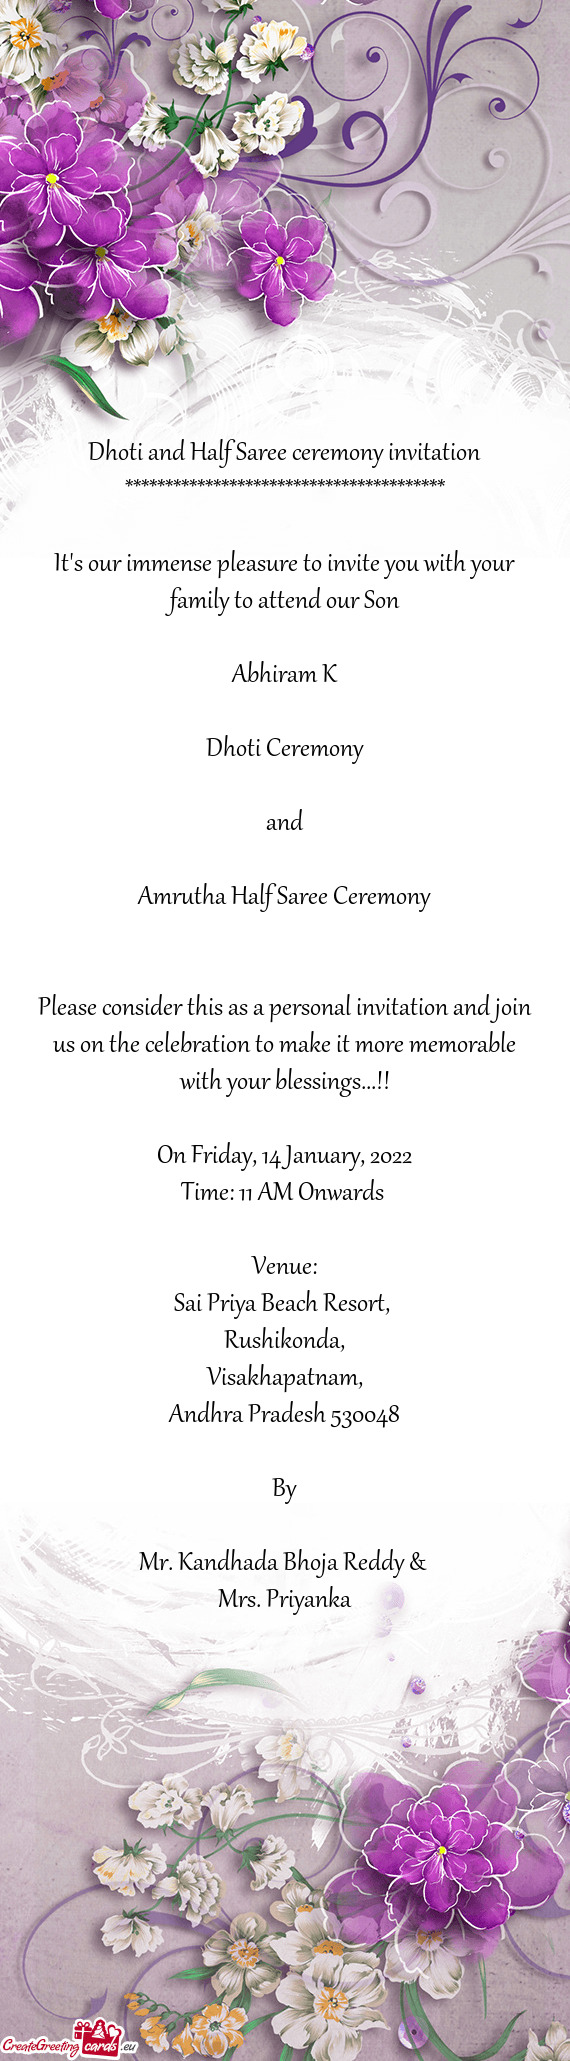 Amrutha Half Saree Ceremony